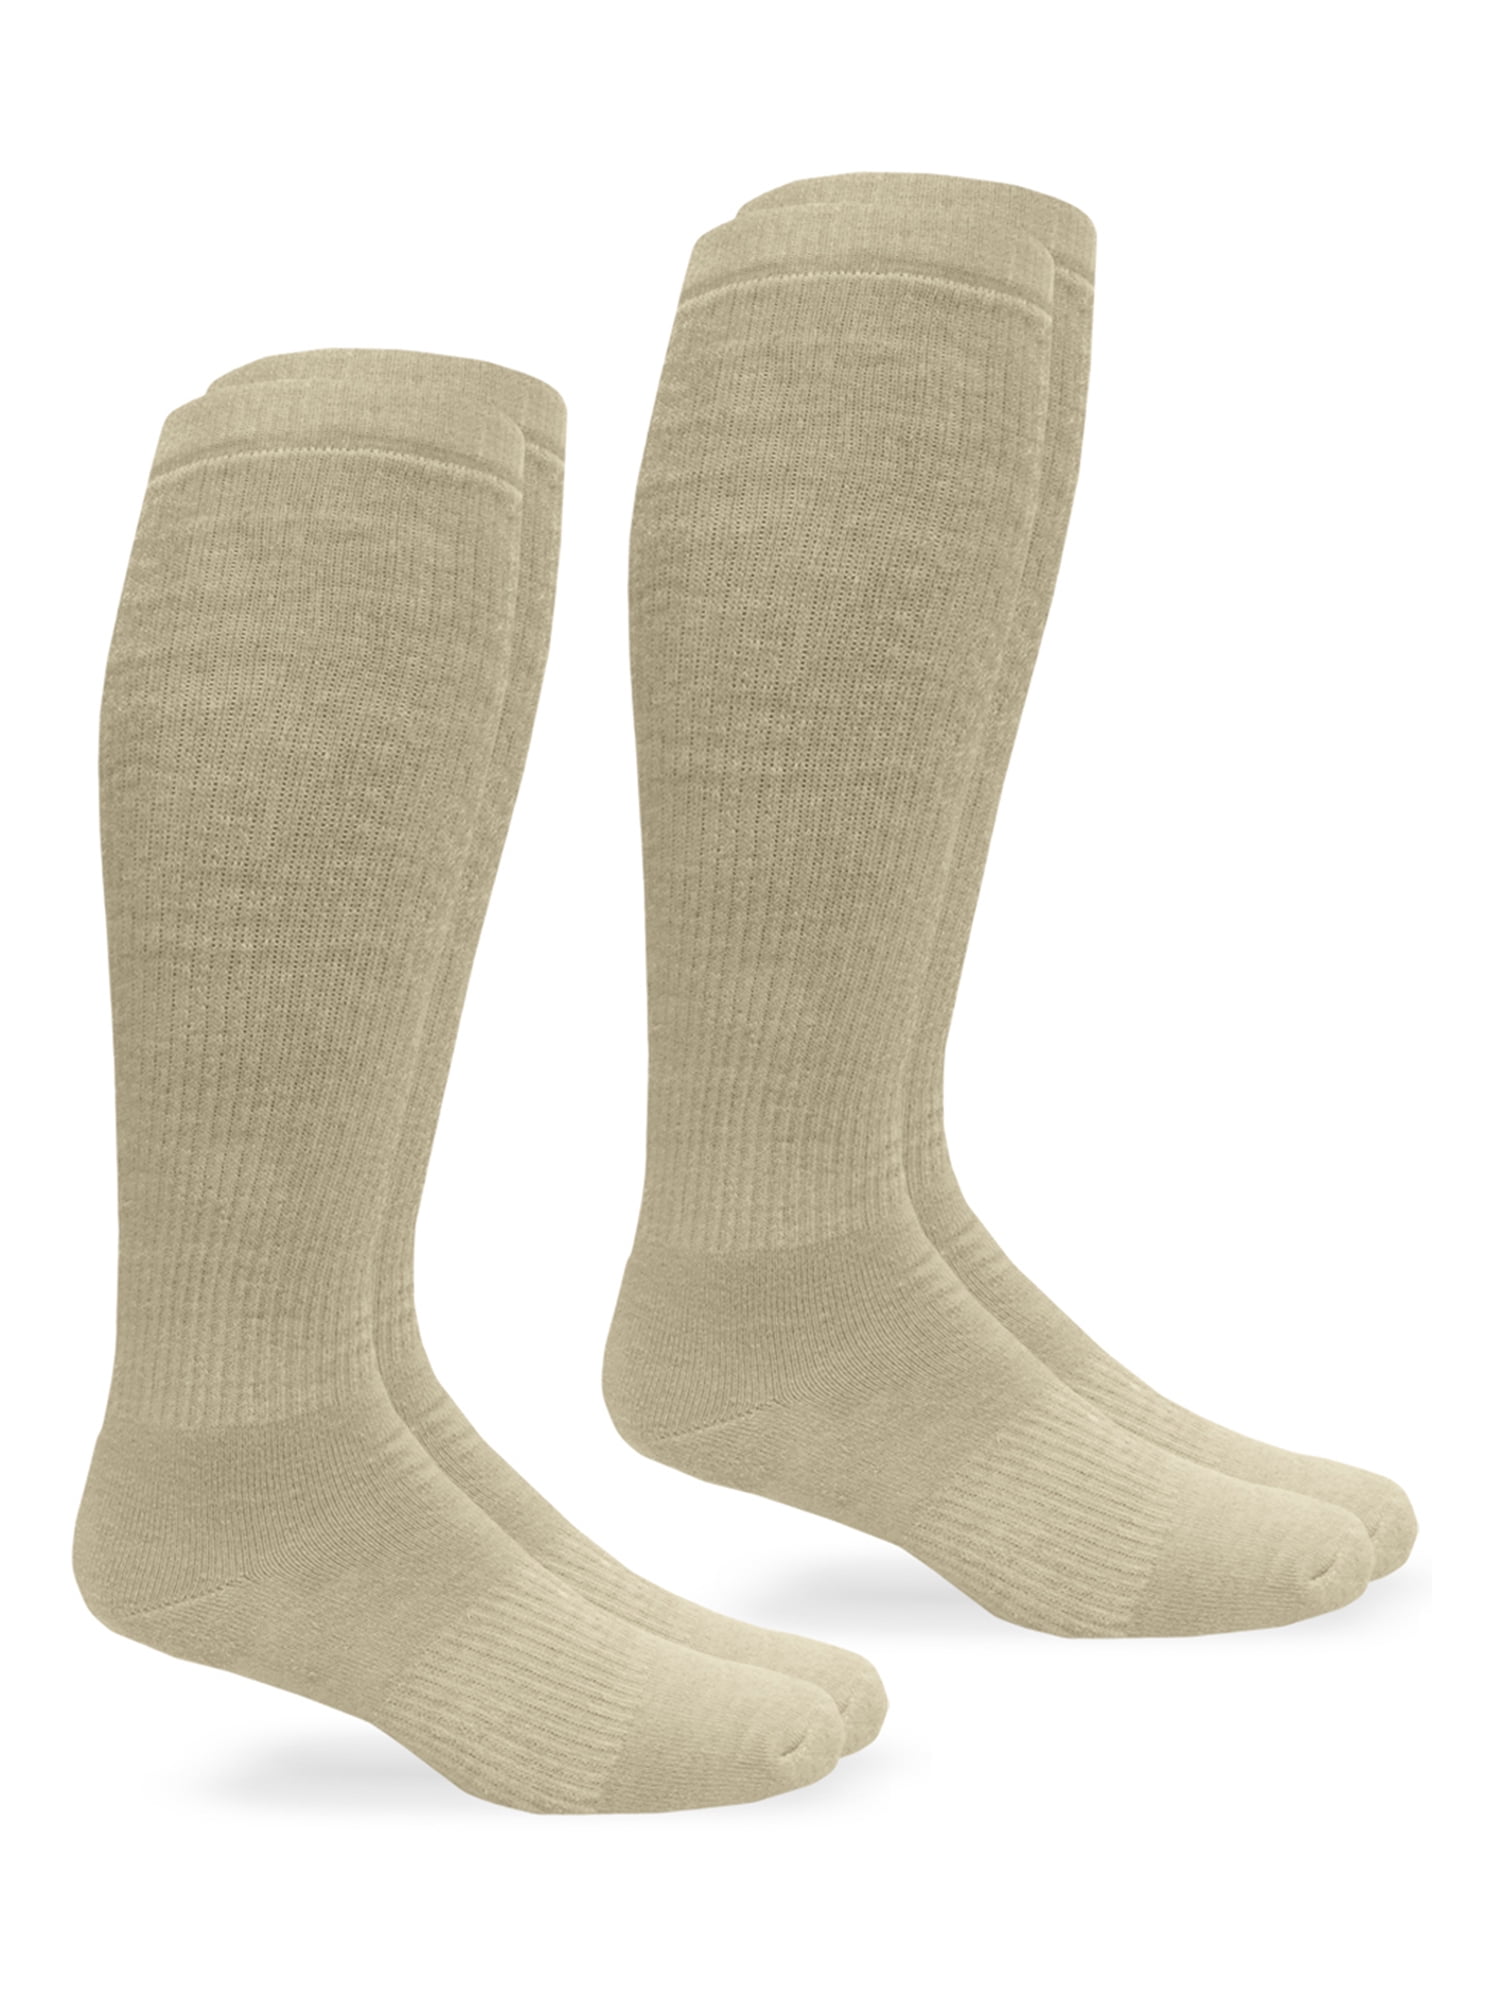 Jefferies Socks Mens Military Blister Guard Mohair Wool Combat Boot Crew Socks 3 Pair Pack 